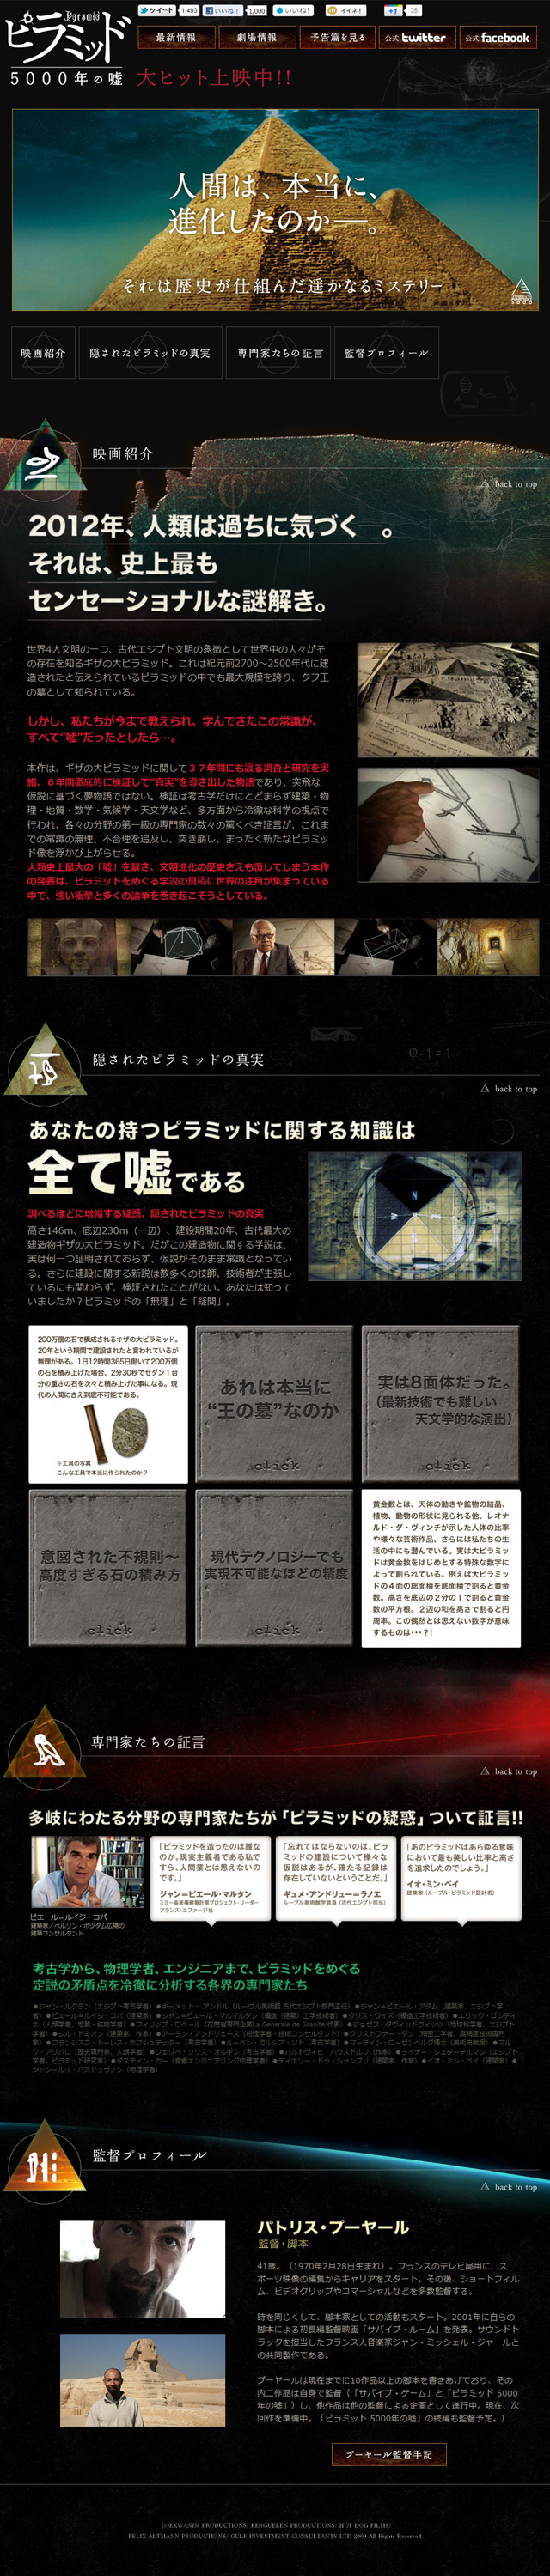 映画『ピラミッド 5000年の嘘』公式サイト